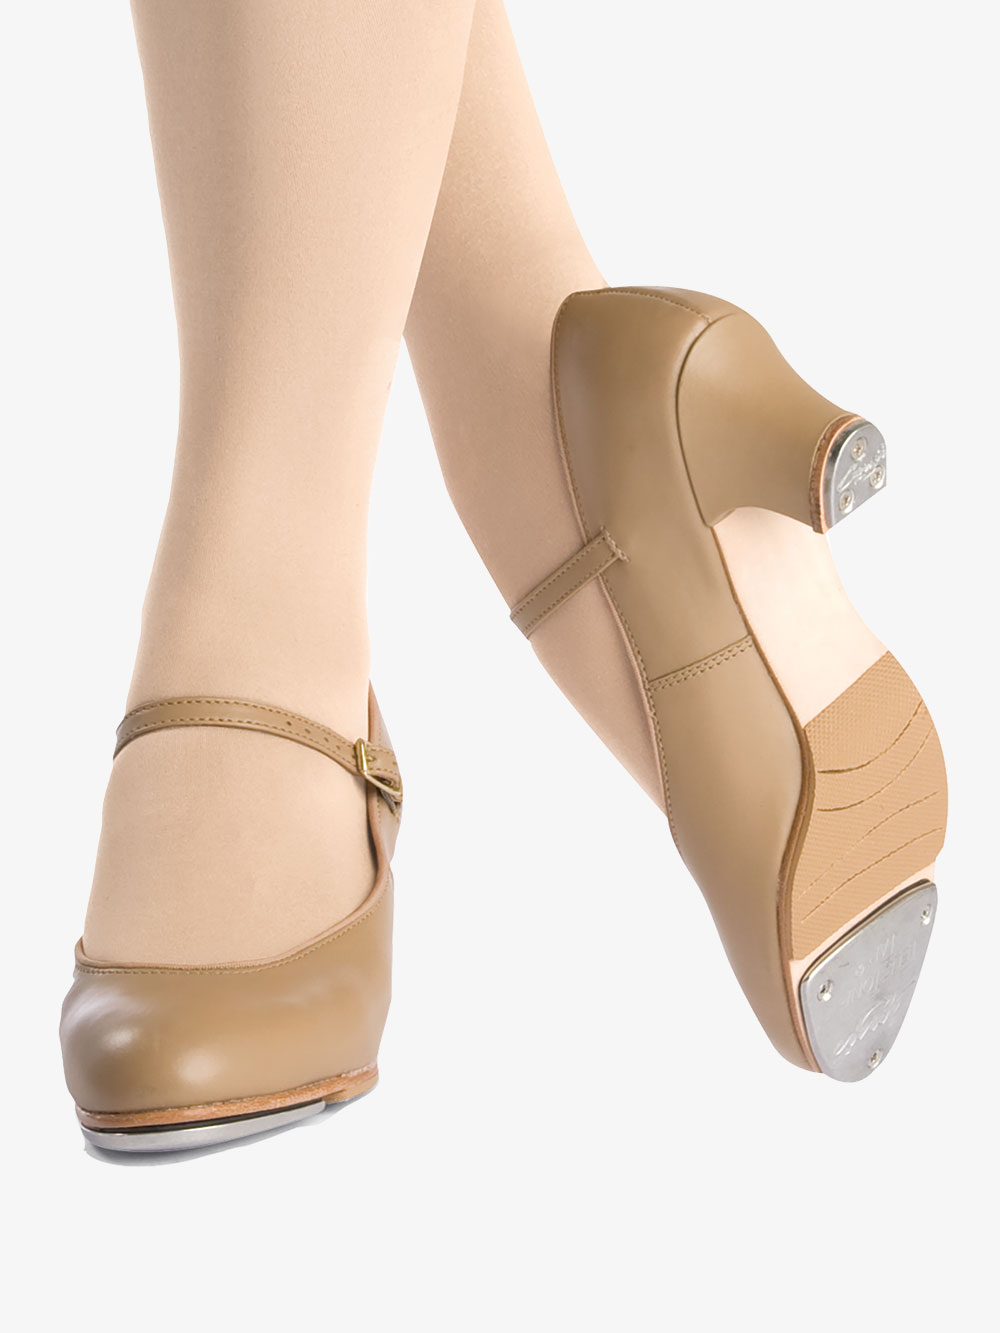 heel tap dance shoes